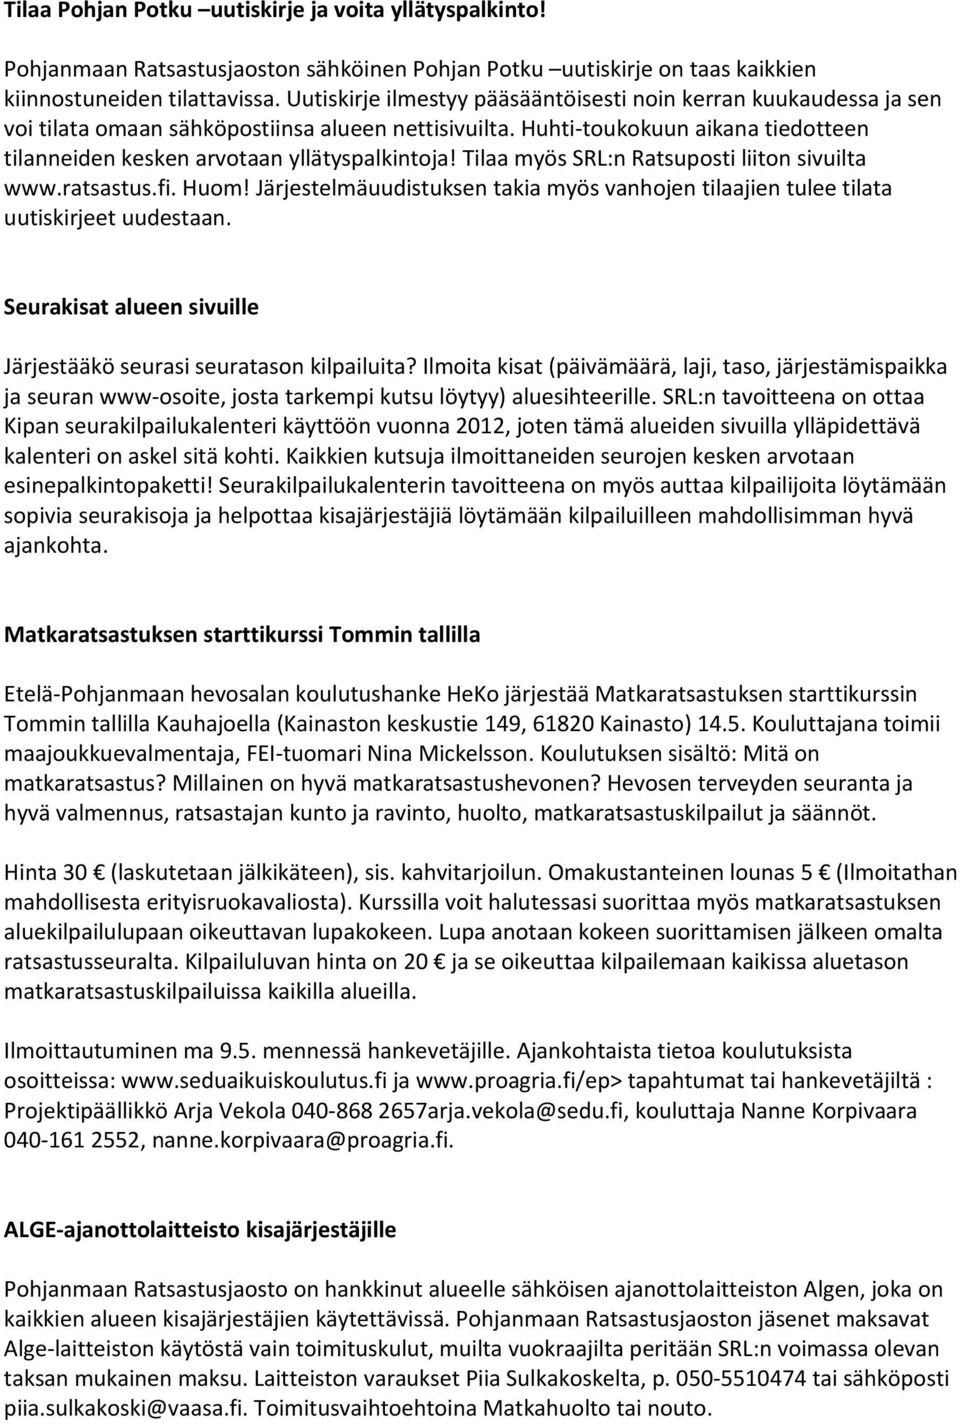 Huhti-toukokuun aikana tiedotteen tilanneiden kesken arvotaan yllätyspalkintoja! Tilaa myös SRL:n Ratsuposti liiton sivuilta www.ratsastus.fi. Huom!